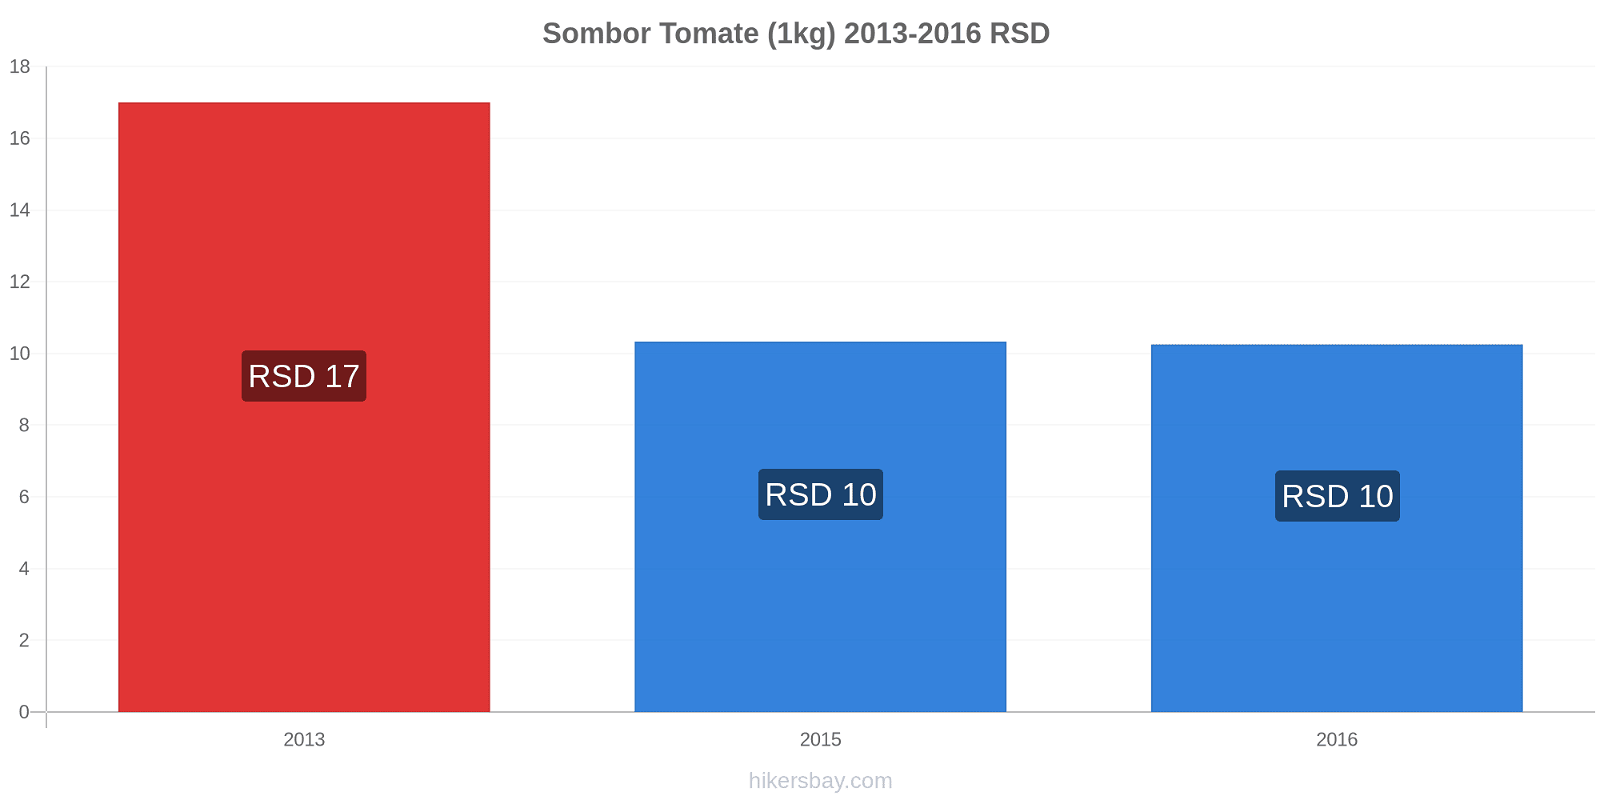 Sombor changements de prix Tomate (1kg) hikersbay.com